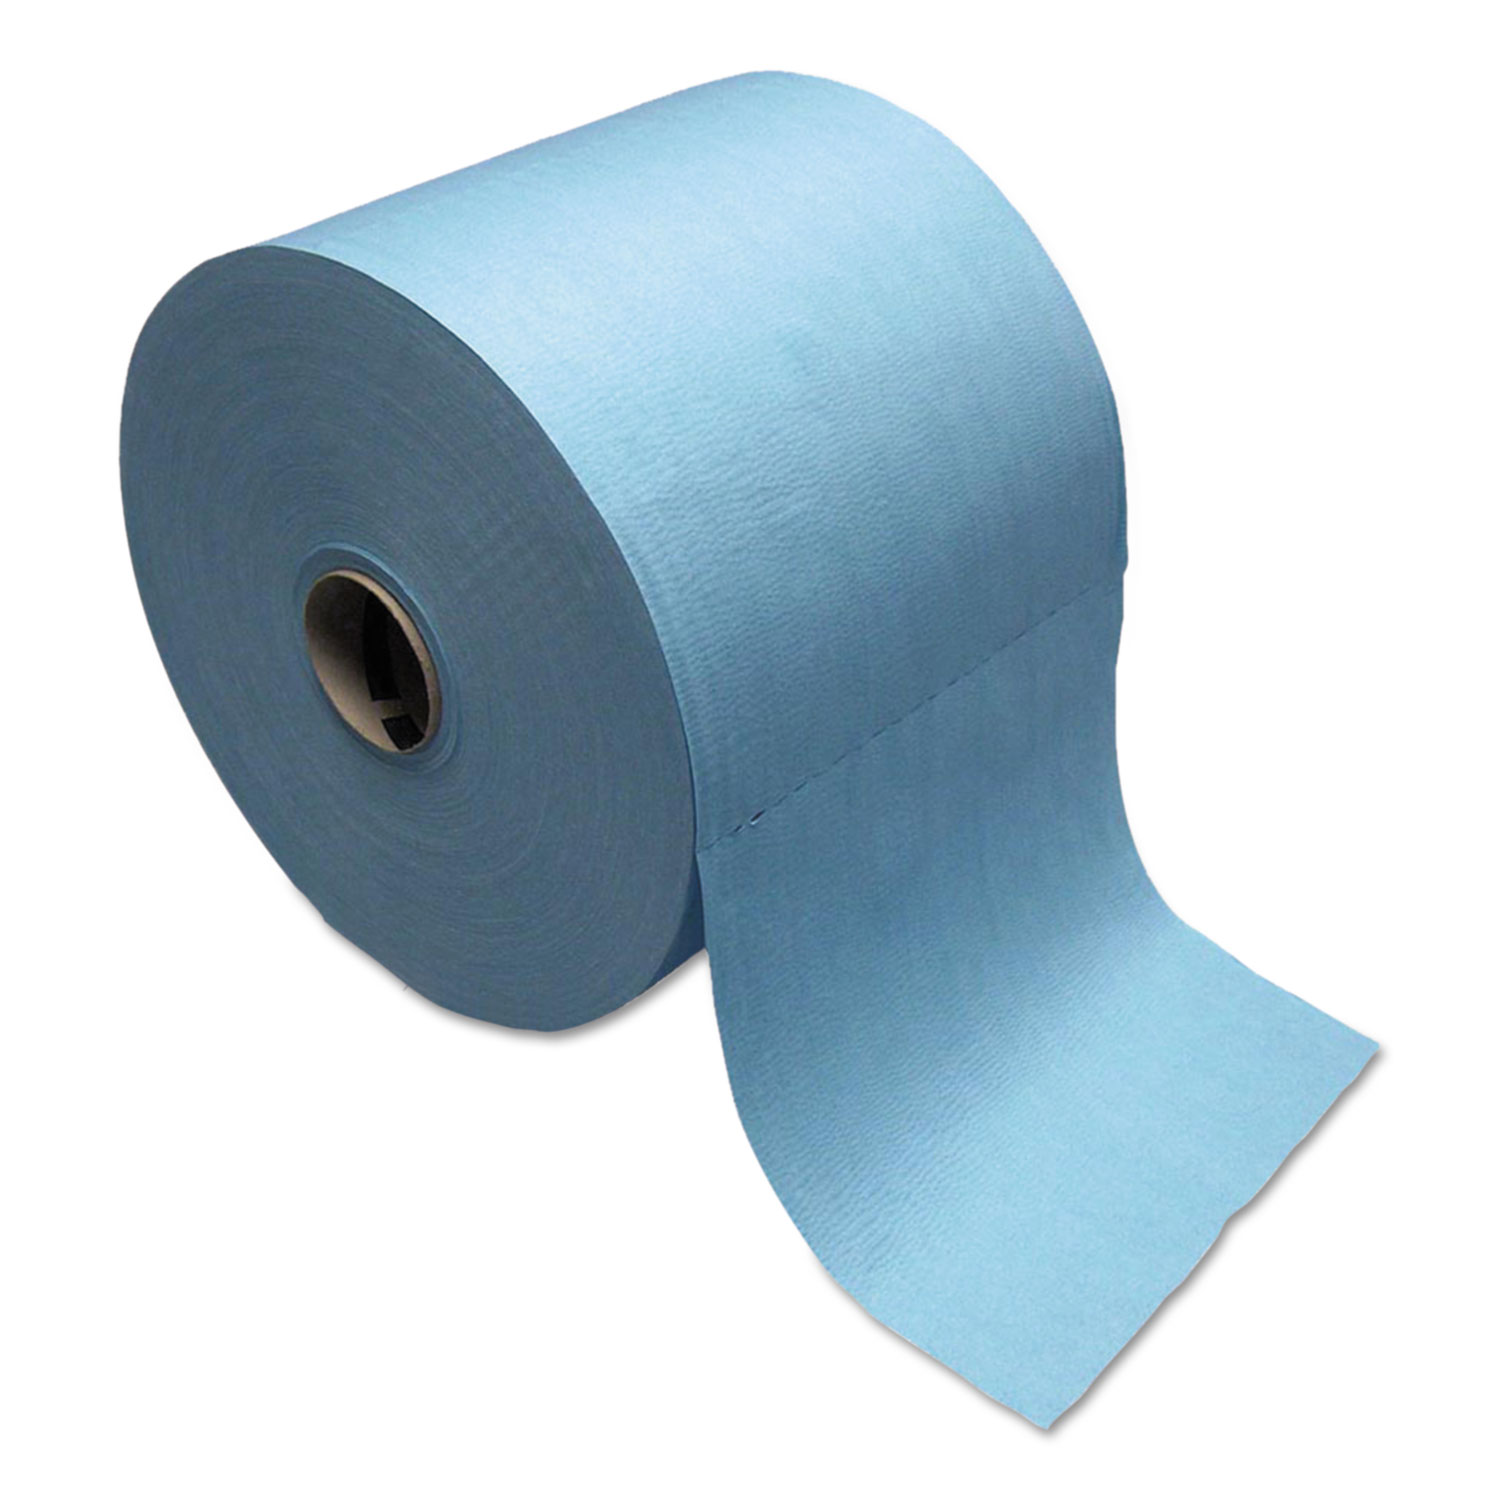 Tuff-Job Spunlace Towels, Blue, Jumbo Roll, 12 x 13, 955/Roll